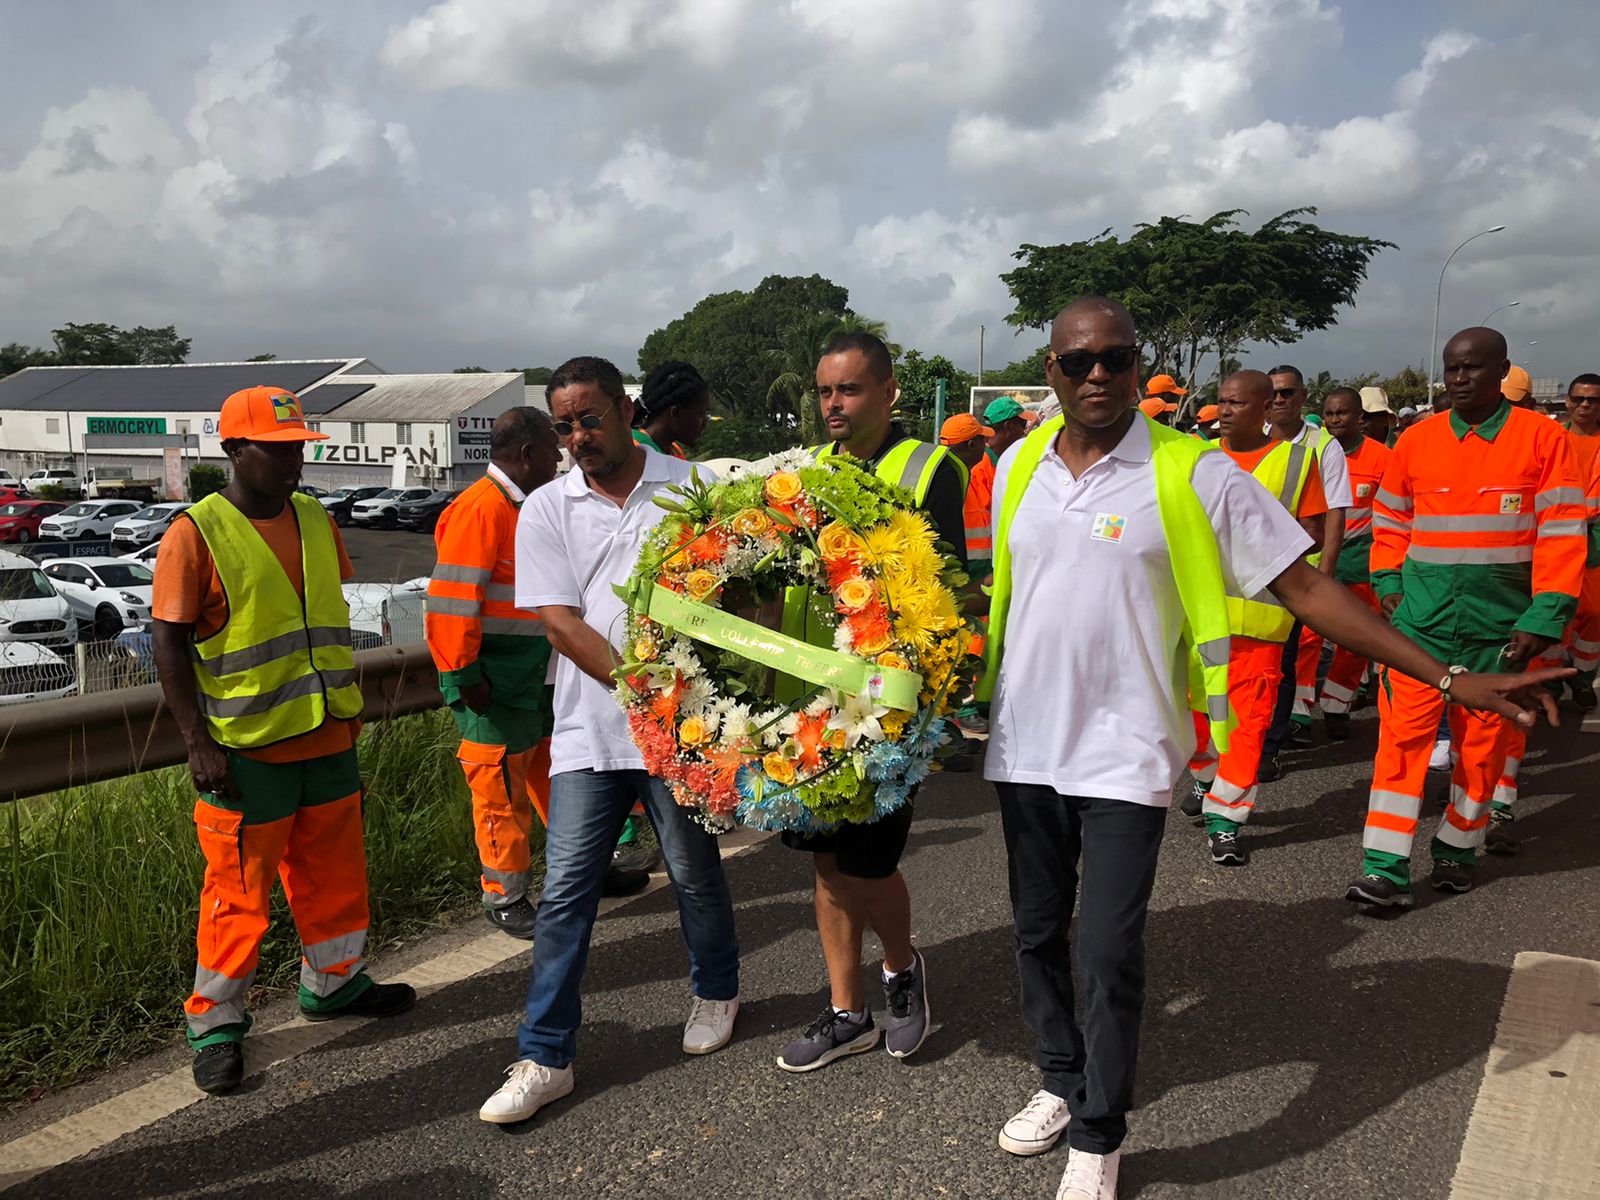     Routes de Guadeloupe rend hommage à Thierry Brasseleur

